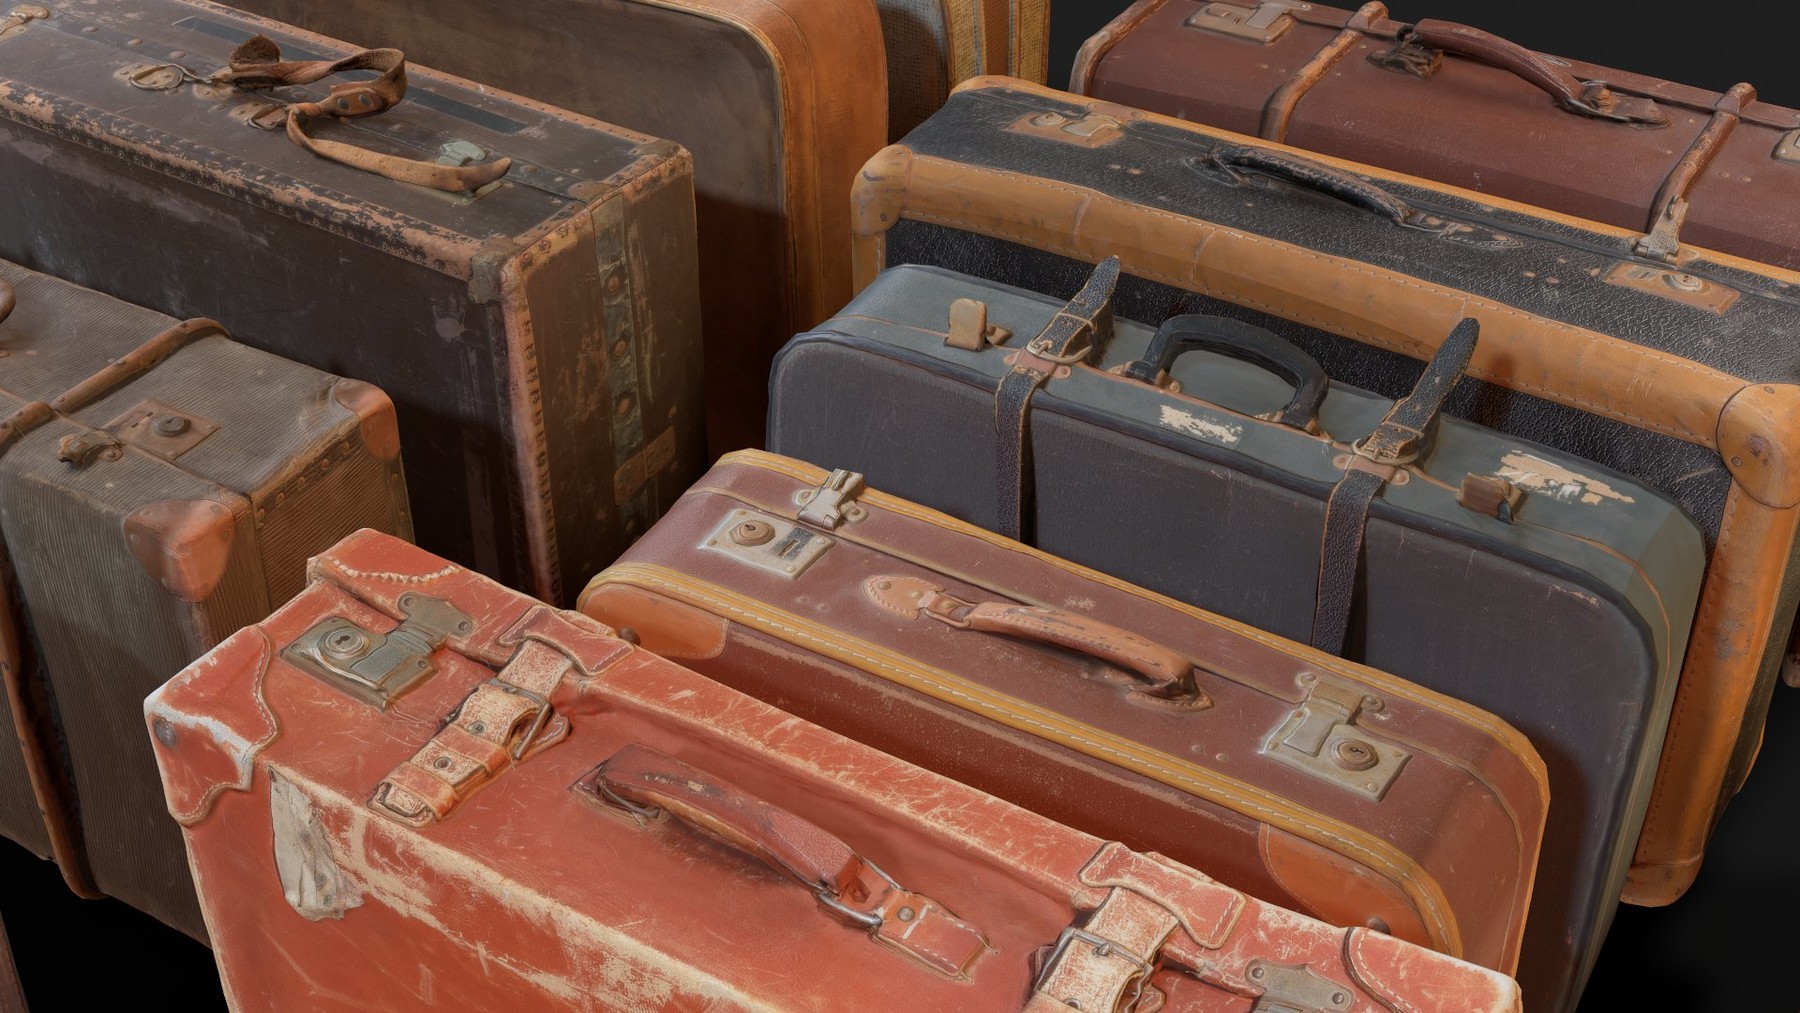 Vintage suitcase, artists supplies suitcase, portable art studio.